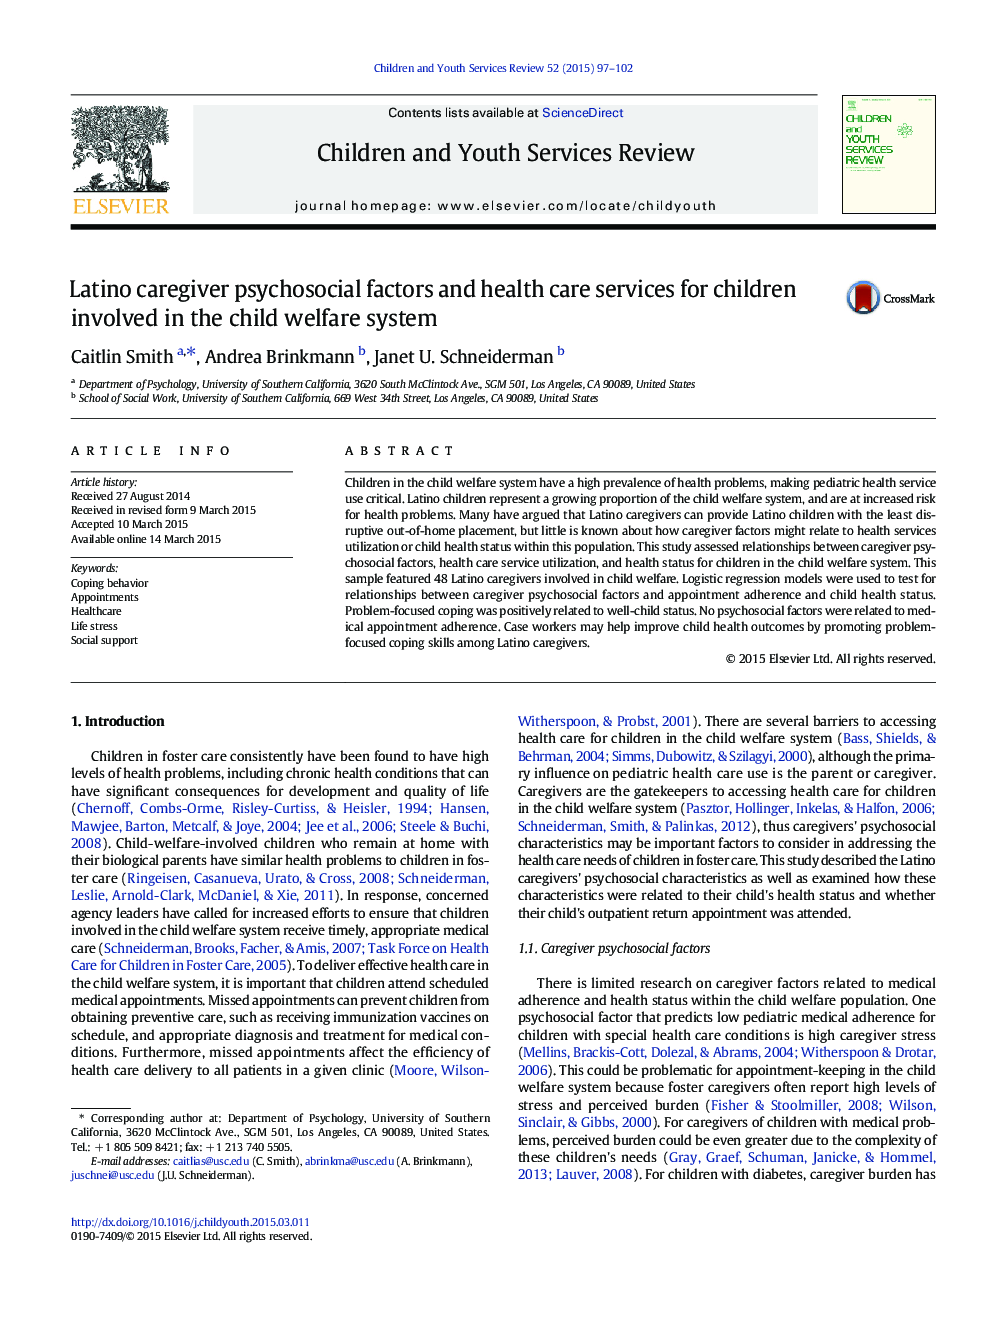 عوامل مراقب روانی اجتماعی و خدمات بهداشتی و درمانی برای کودکان درگیر در سیستم رفاه کودکان